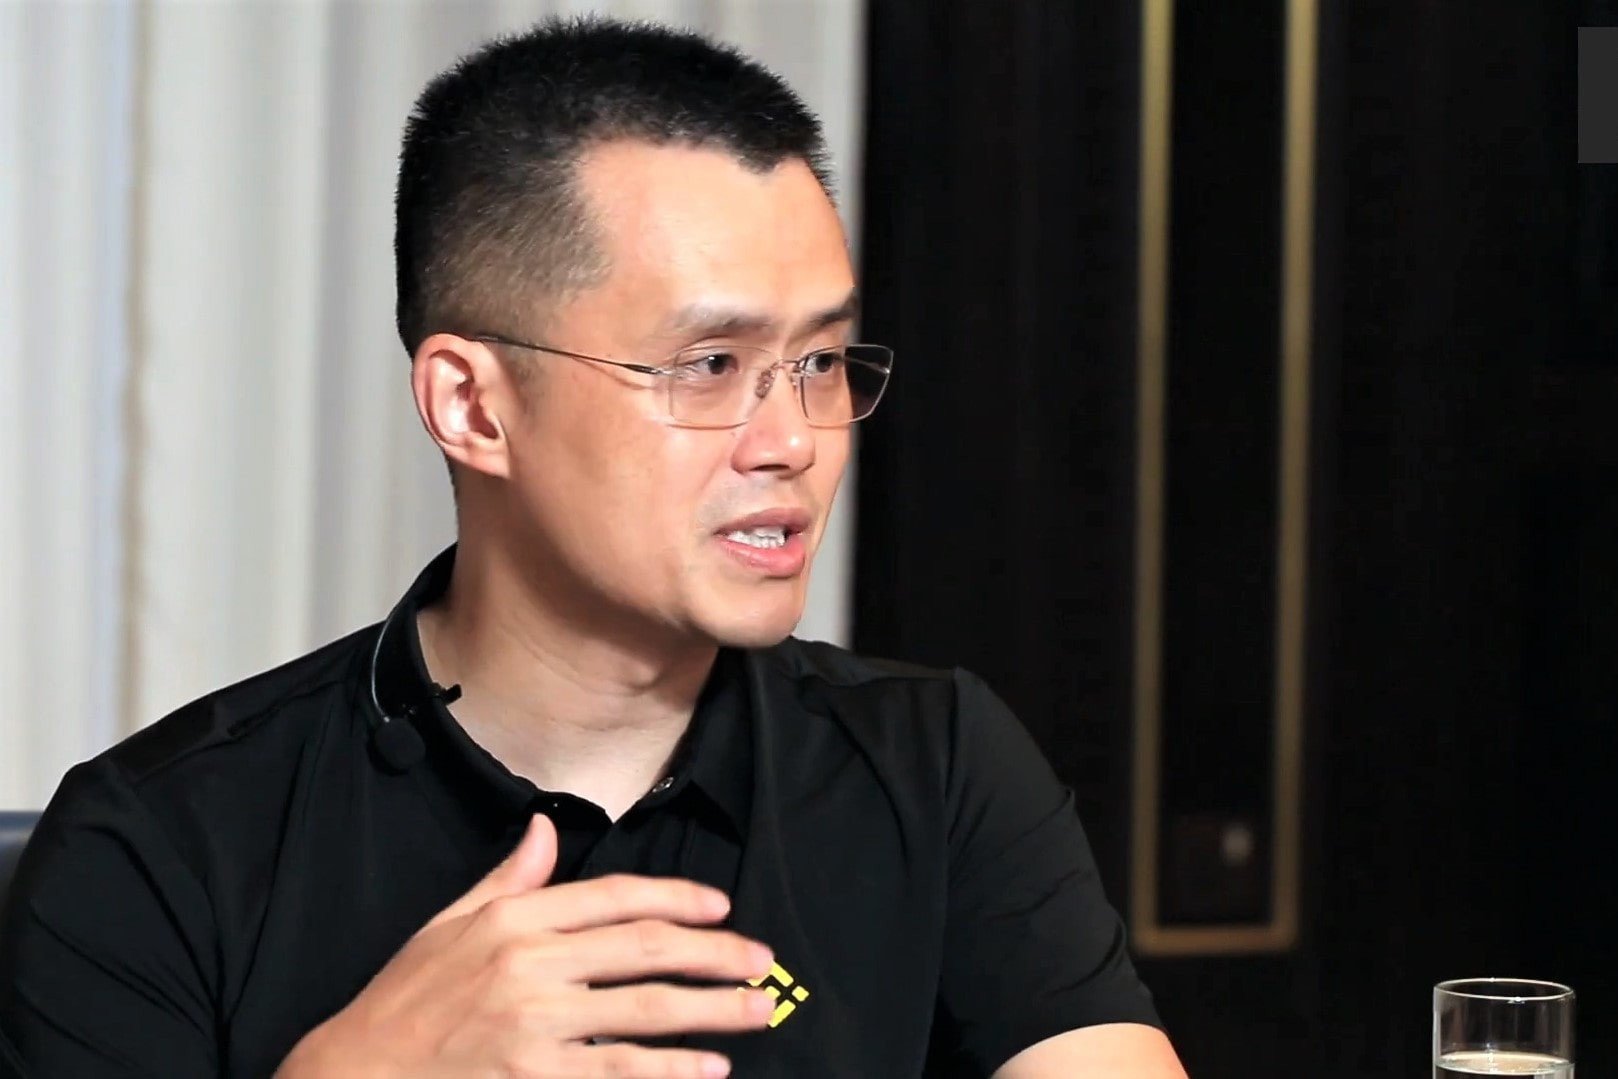 مؤسس بينانس تشانغ بينغ زاو يصرح بأن اعتماد العملات الرقمية سيحدث بصرف النظر عن قرار الحكومة بشأن التنظيم